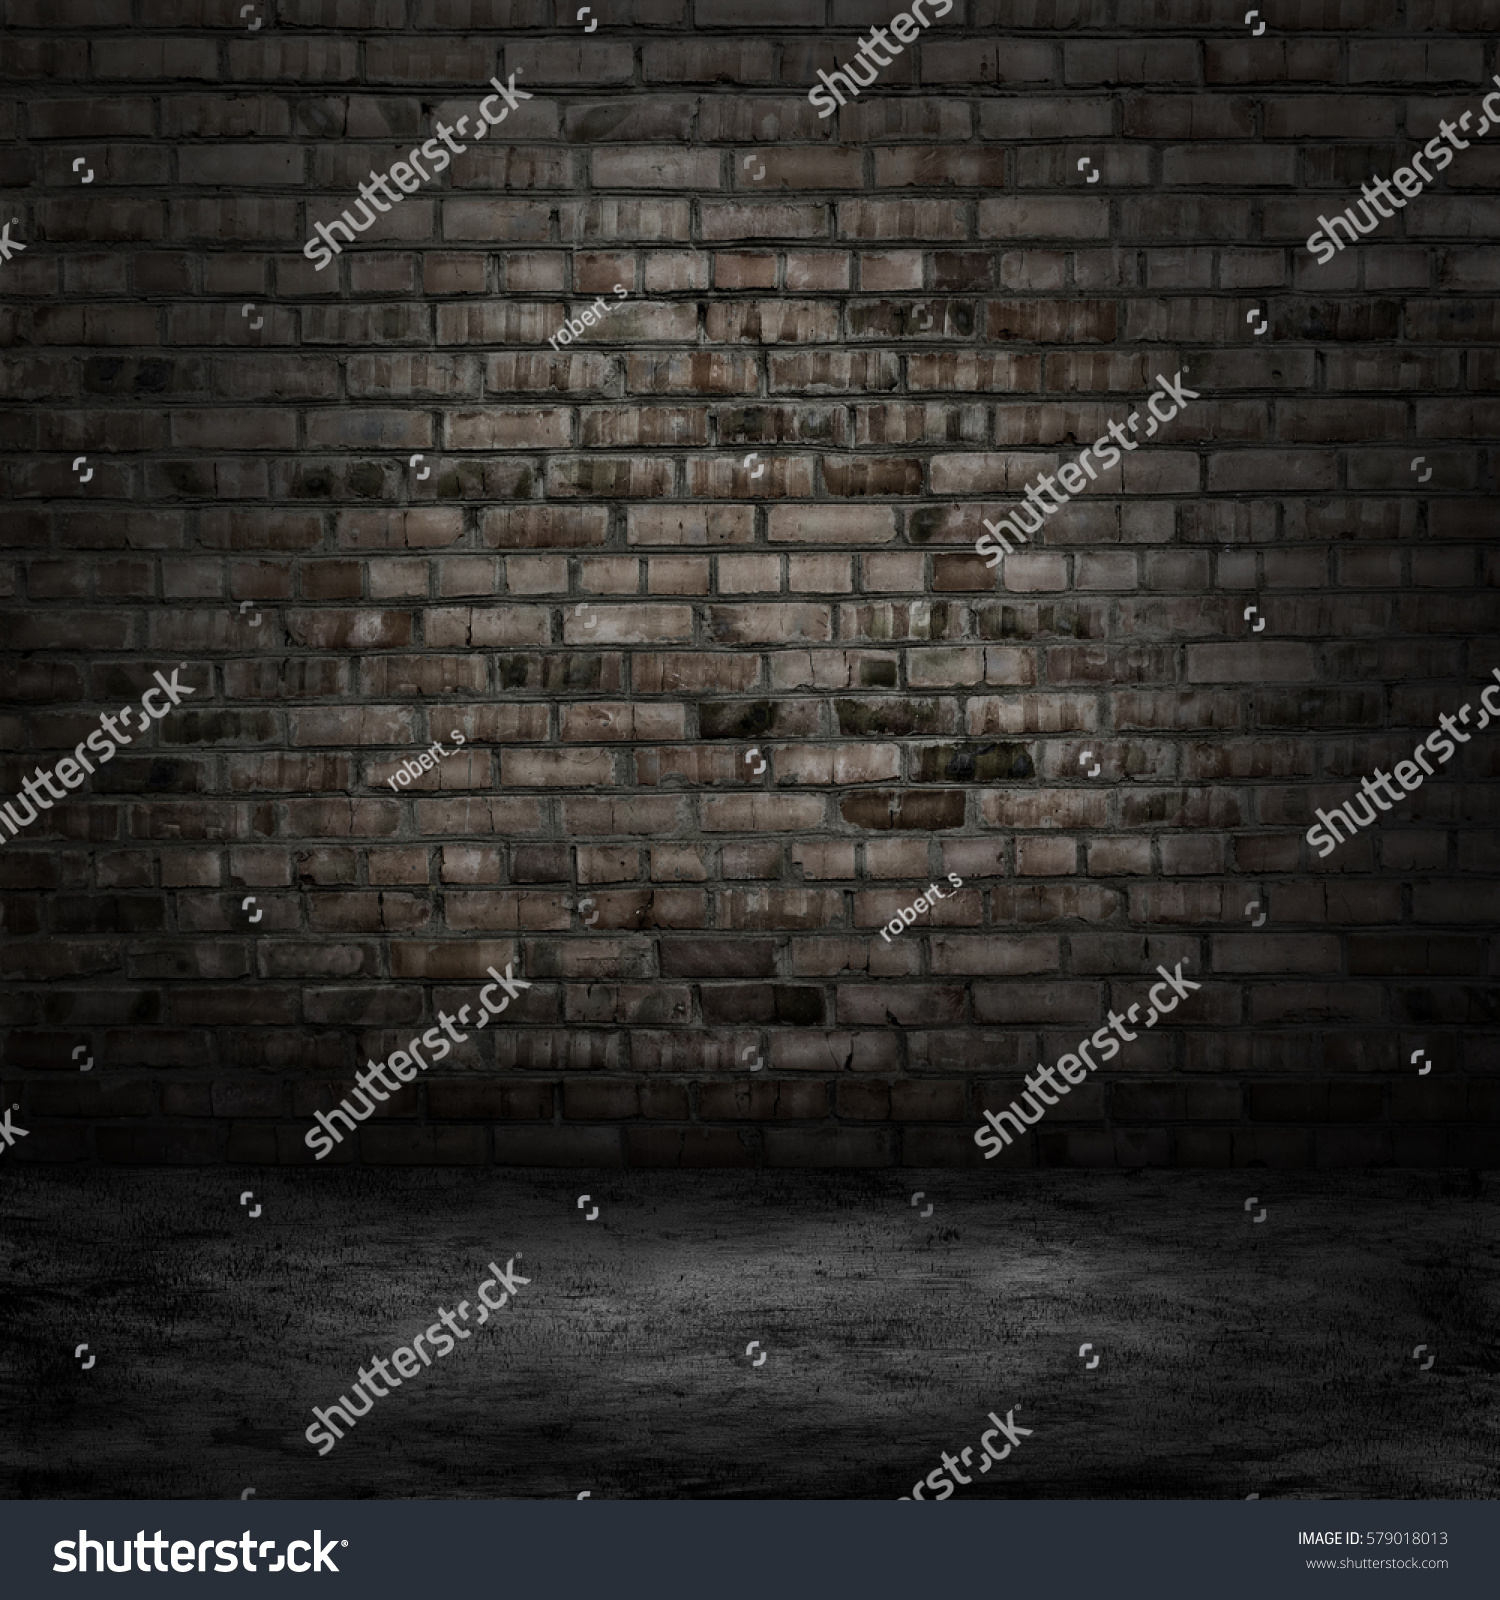 Dark Room Tile Floor Brick Wall Stock Photo 579018013 | Shutterstock